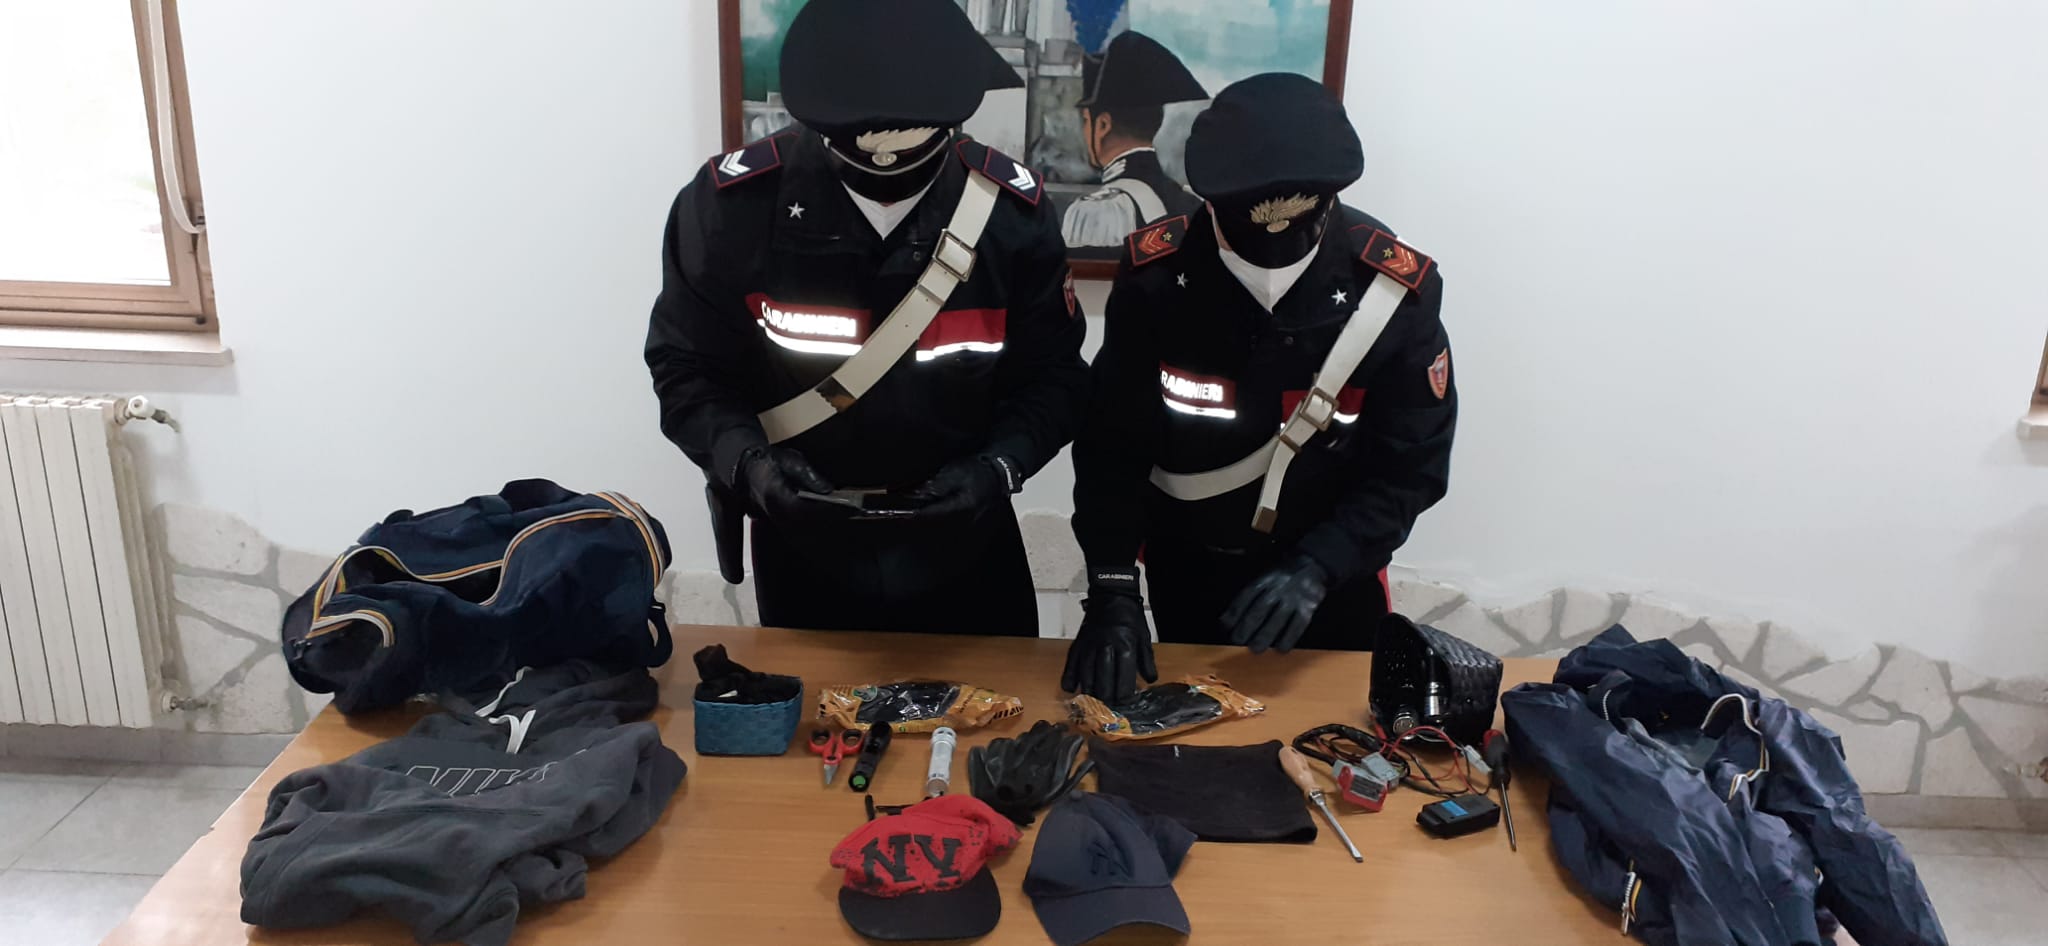 Pomezia, Carabinieri arrestano un uomo per tentata rapina